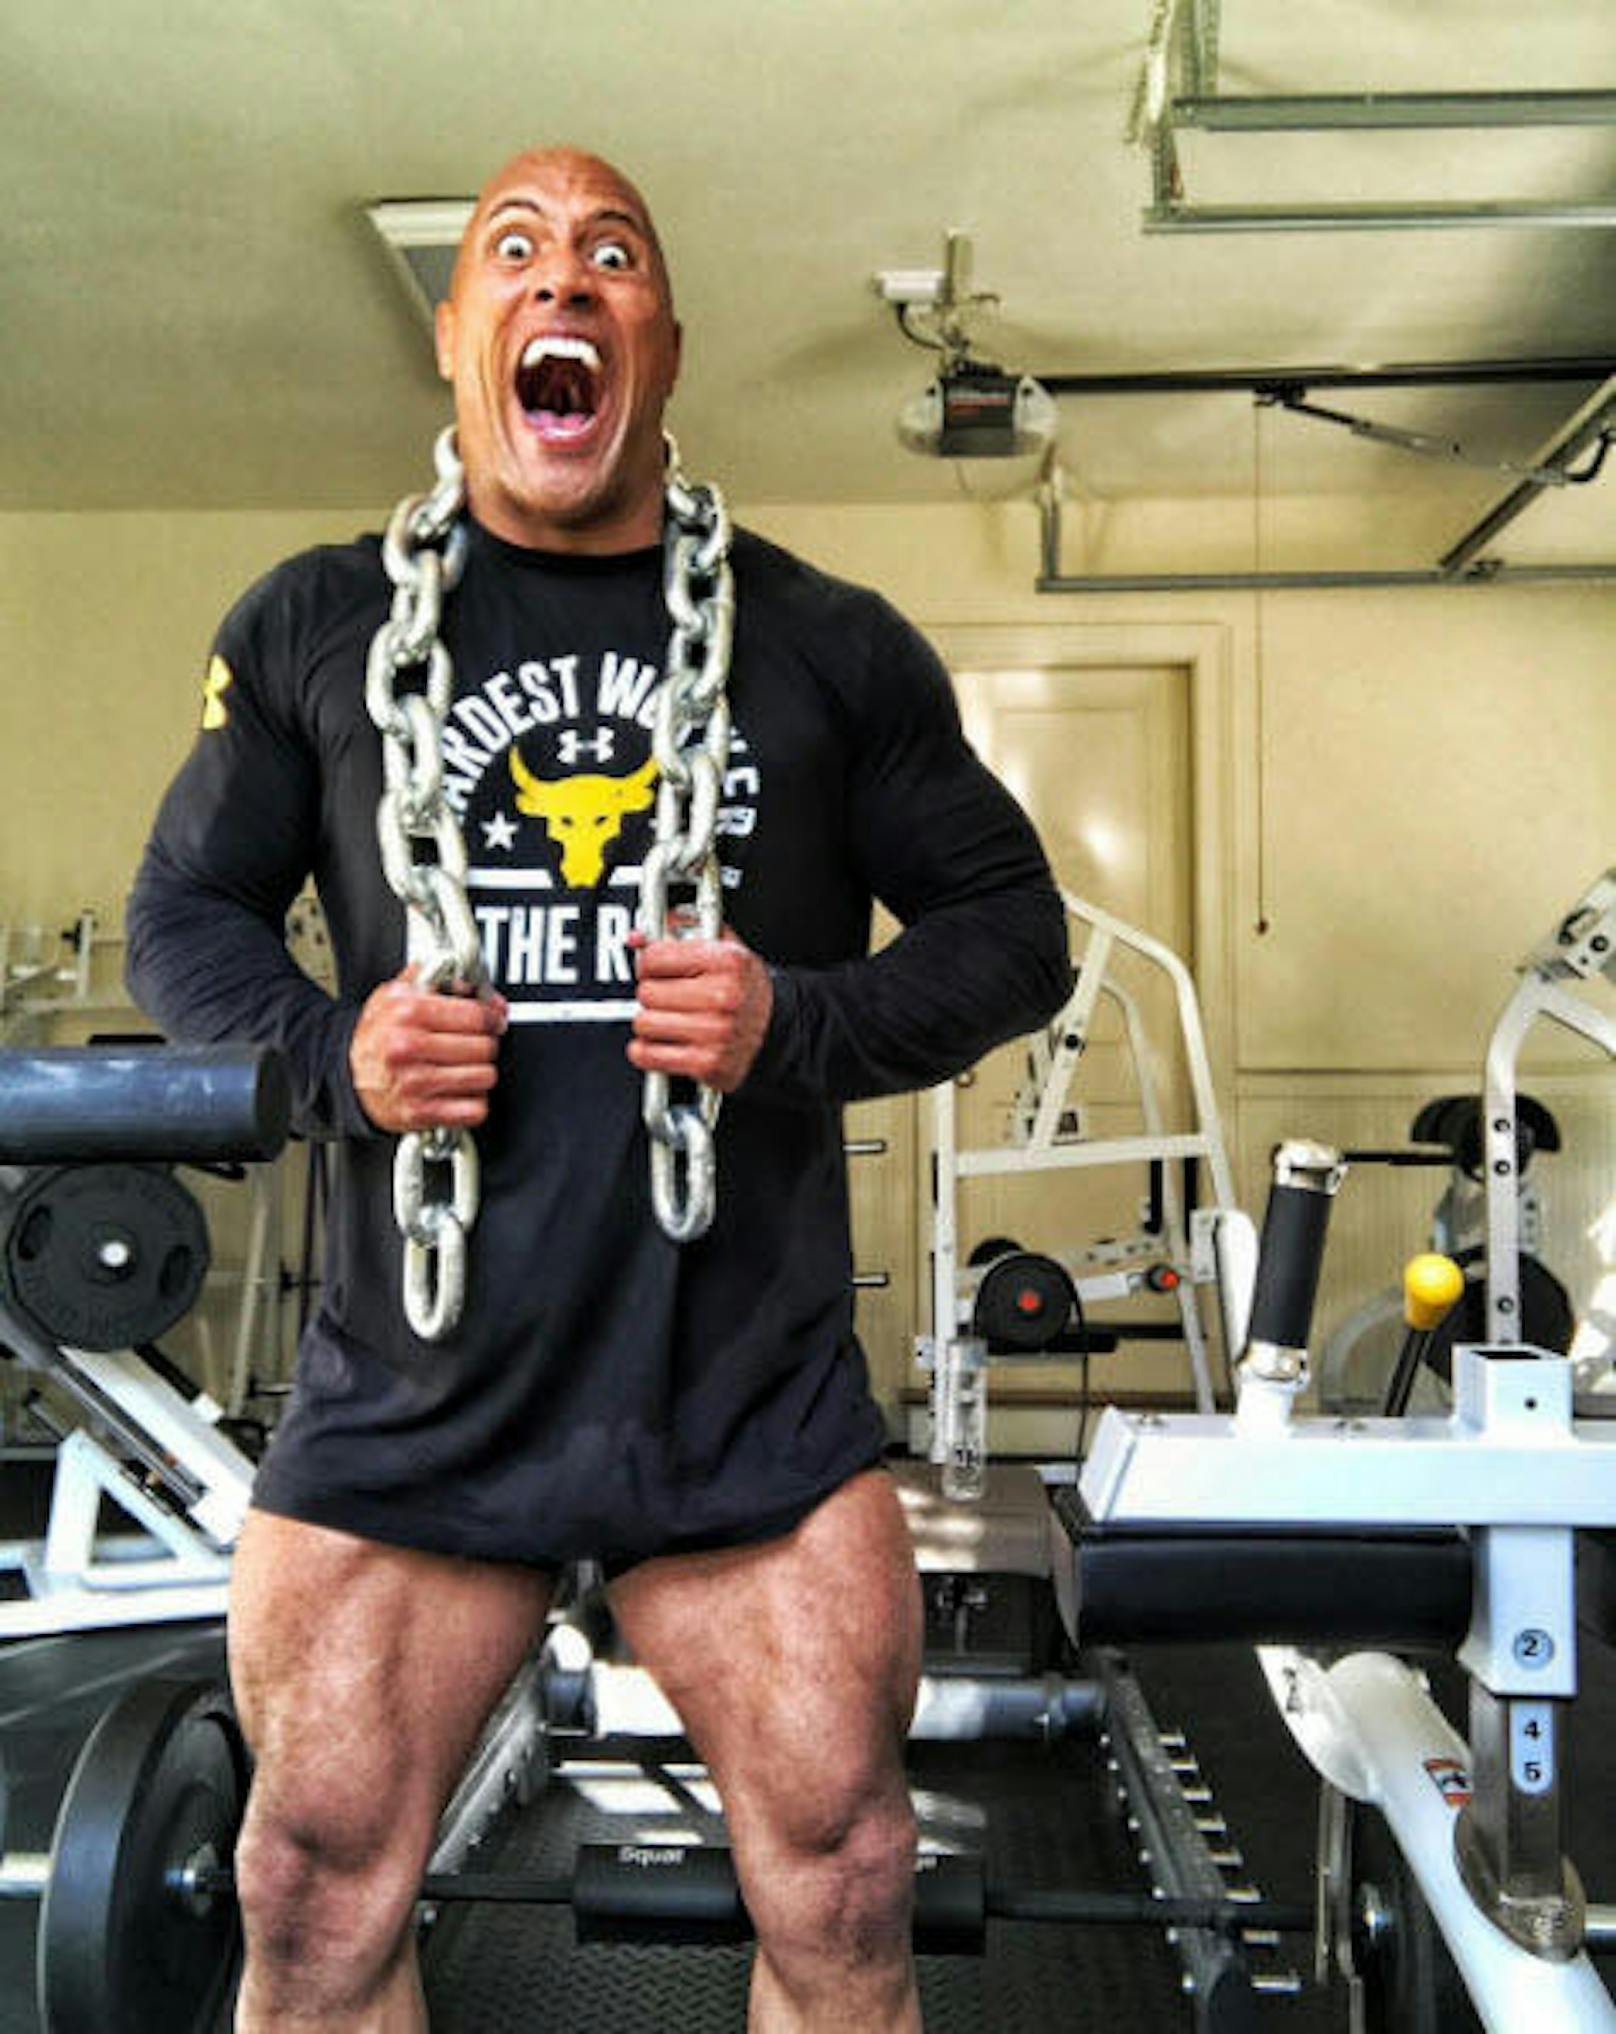 03.07.2017: Dwayne Johnson präsentiert seine gigantischen Oberschenkel auf Instagram und stellt klar: "Ich trainiere nicht nackt". Die Shorts seien durch's Muskelspiel einfach nach oben gerutscht... 